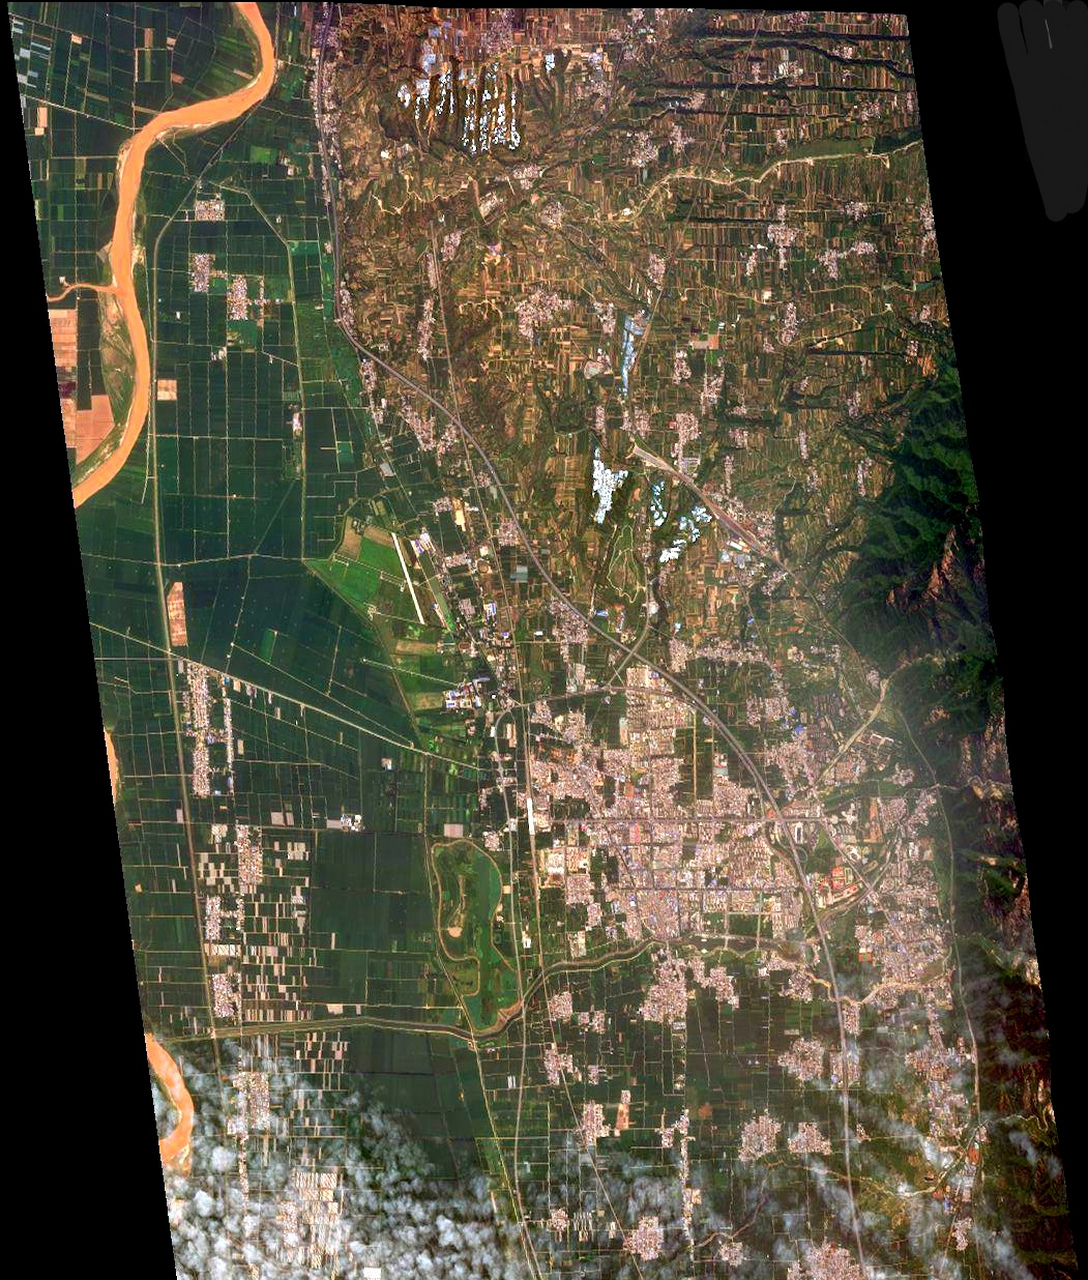 渭南市卫星地图高清版图片